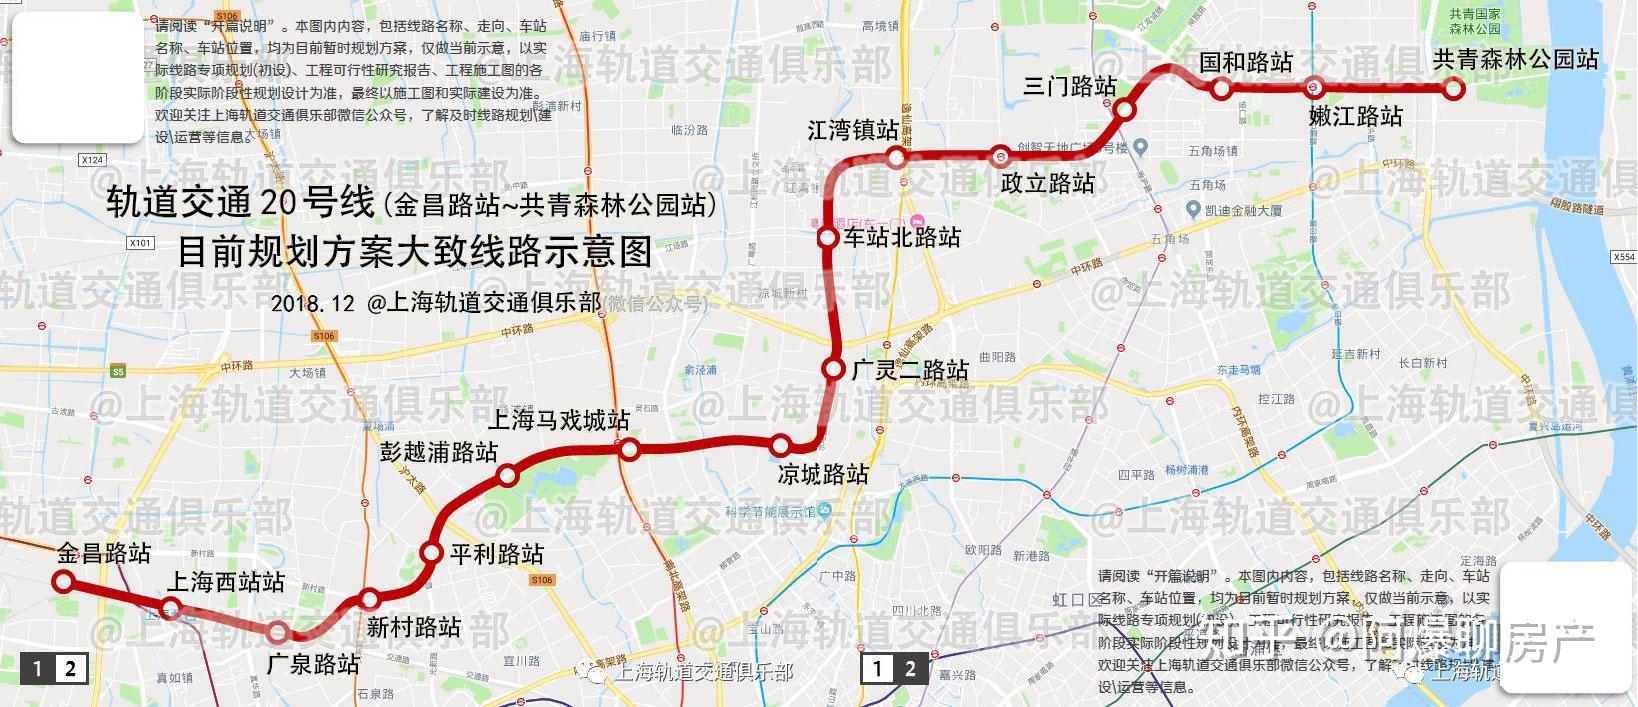 20号线工可招标上海第二条地铁环线初见雏形